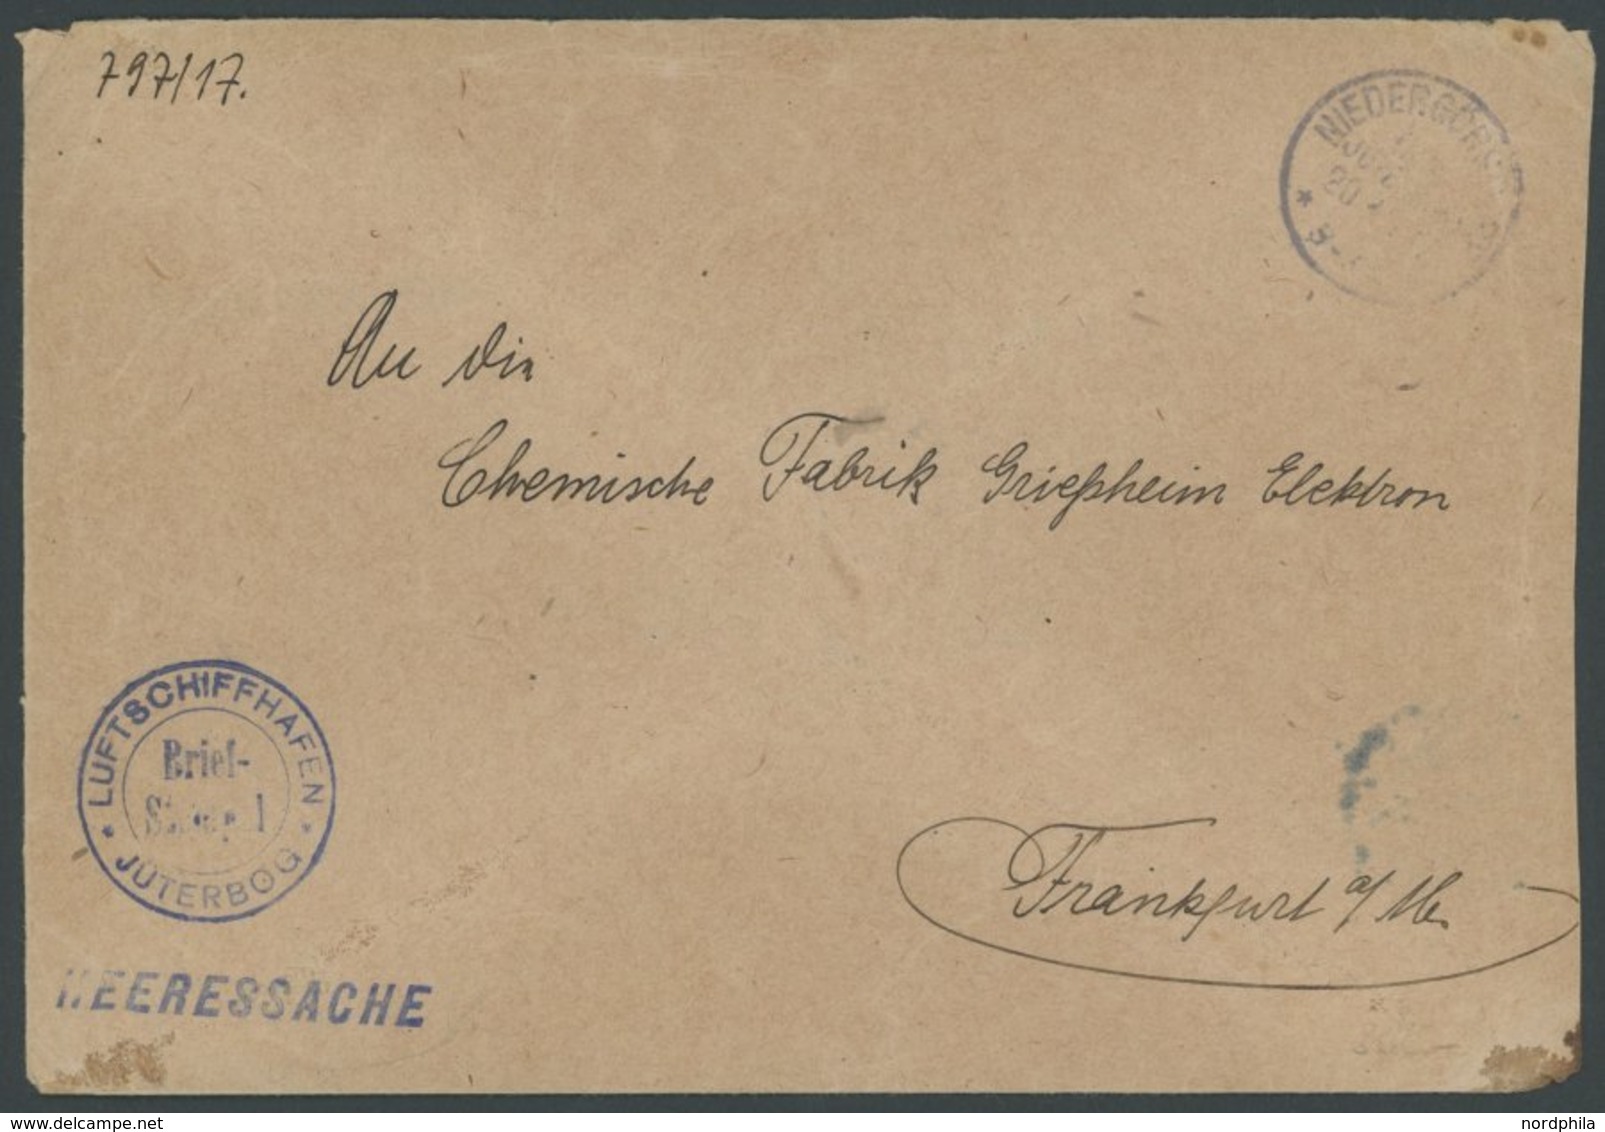 LUFTFAHRT IM I. WELTKRIEG 1916, LUFTSCHIFFHAFEN JÜTERBOG, Blauer Briefstempel Auf Heeressache, Feinst - Airplanes